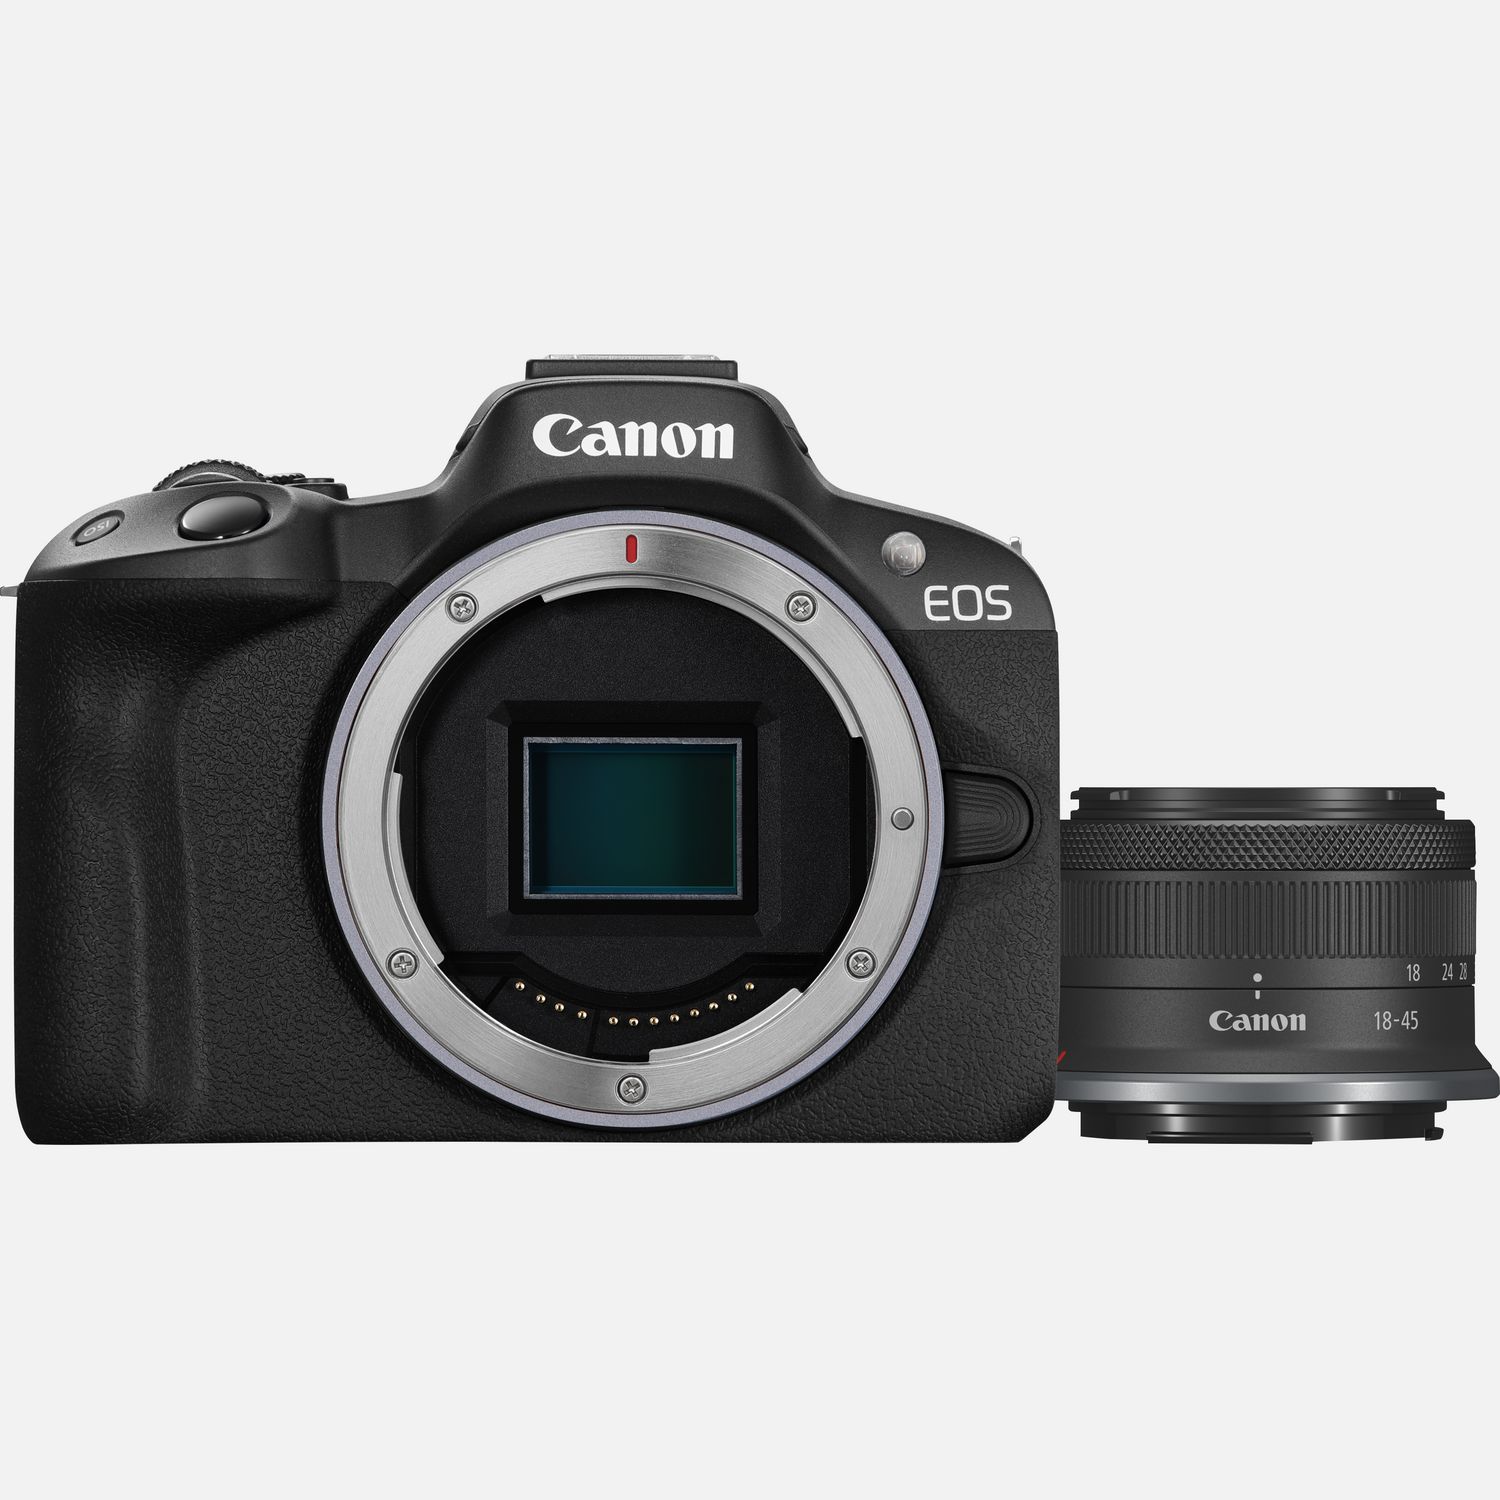 Cámaras réflex y mirrorless 4K - Canon Spain